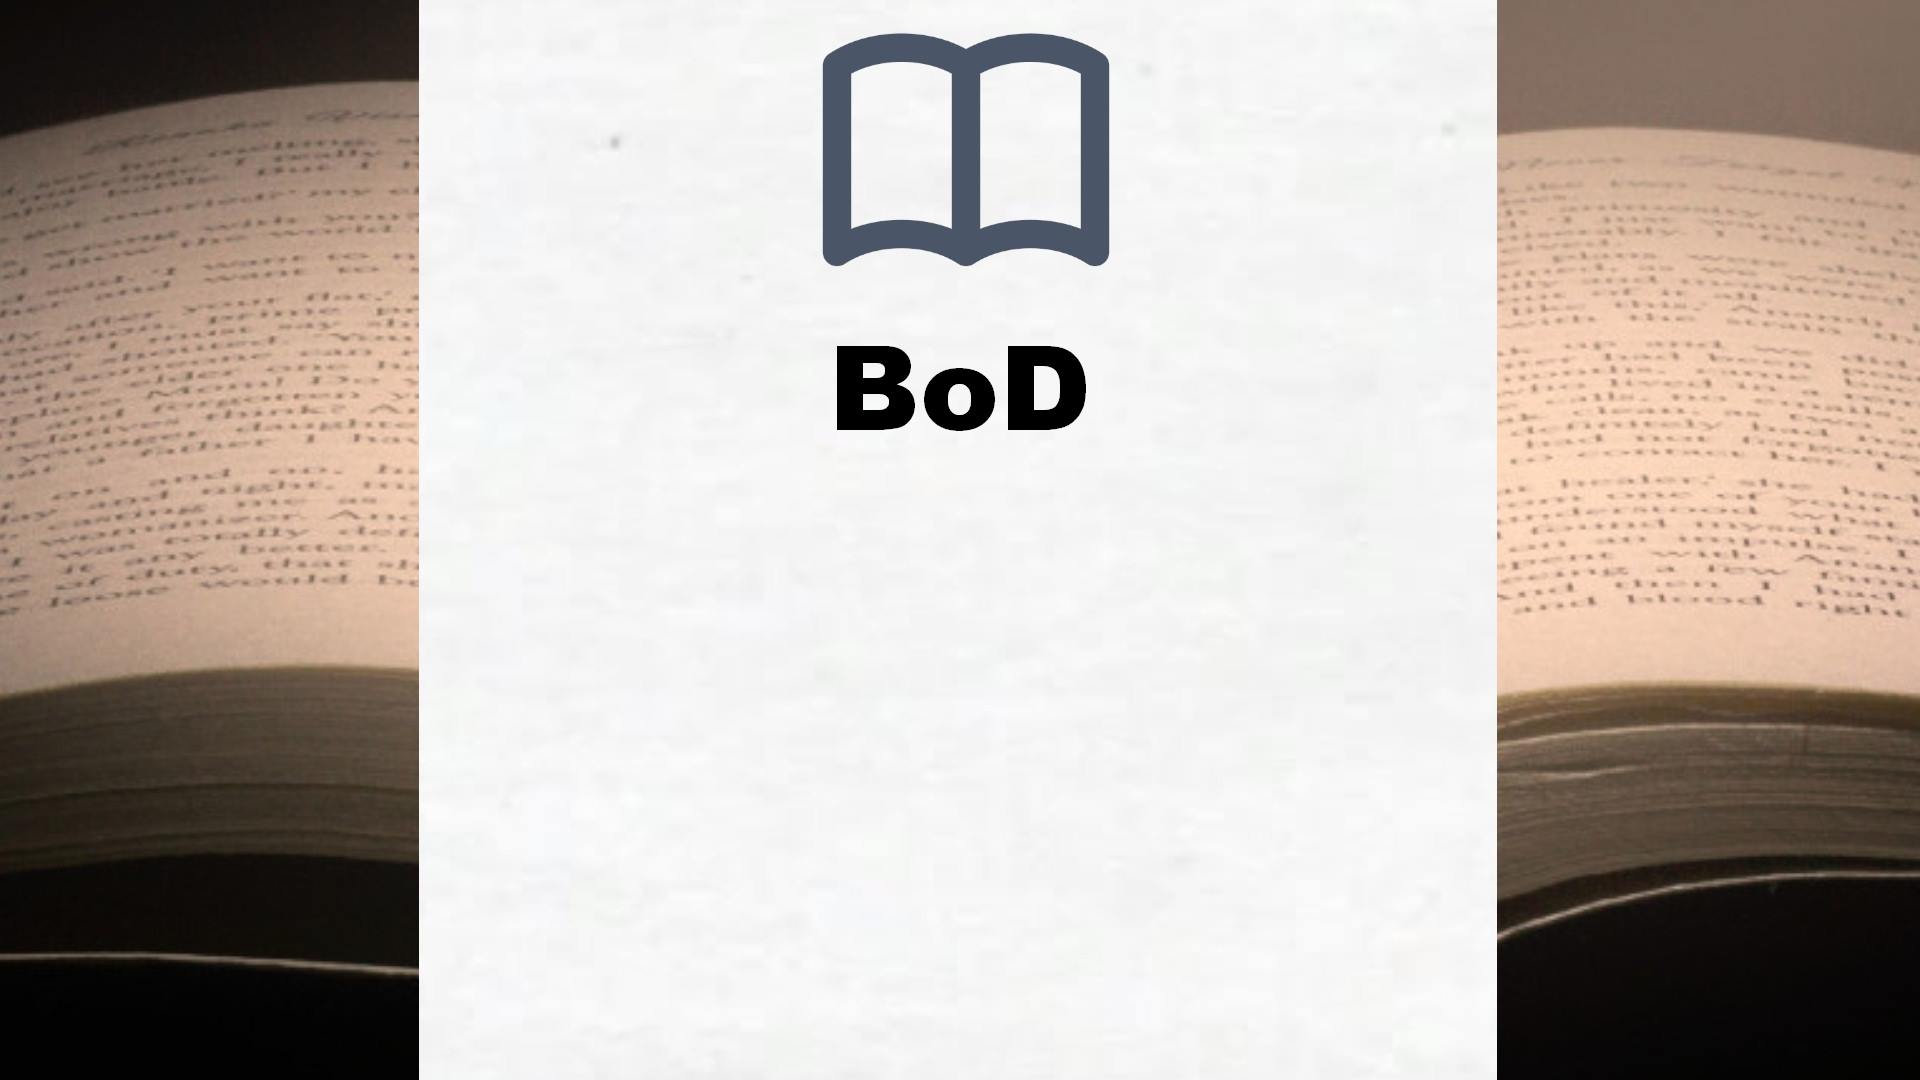 Bücher über BoD